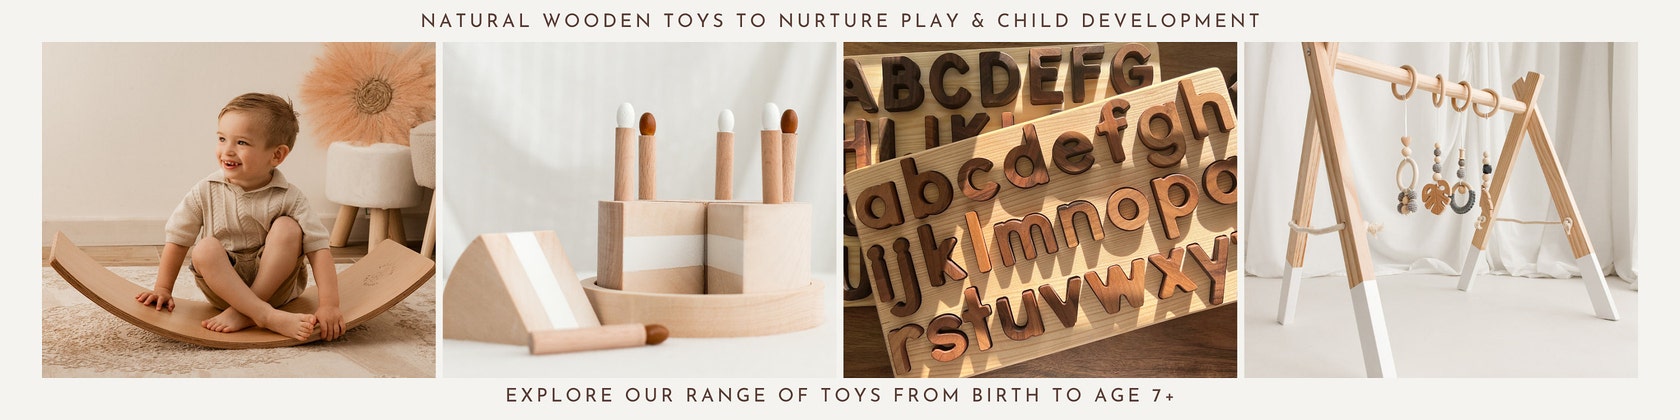 Ideas de juguetes y regalos para niños de 7 años. Curiosite